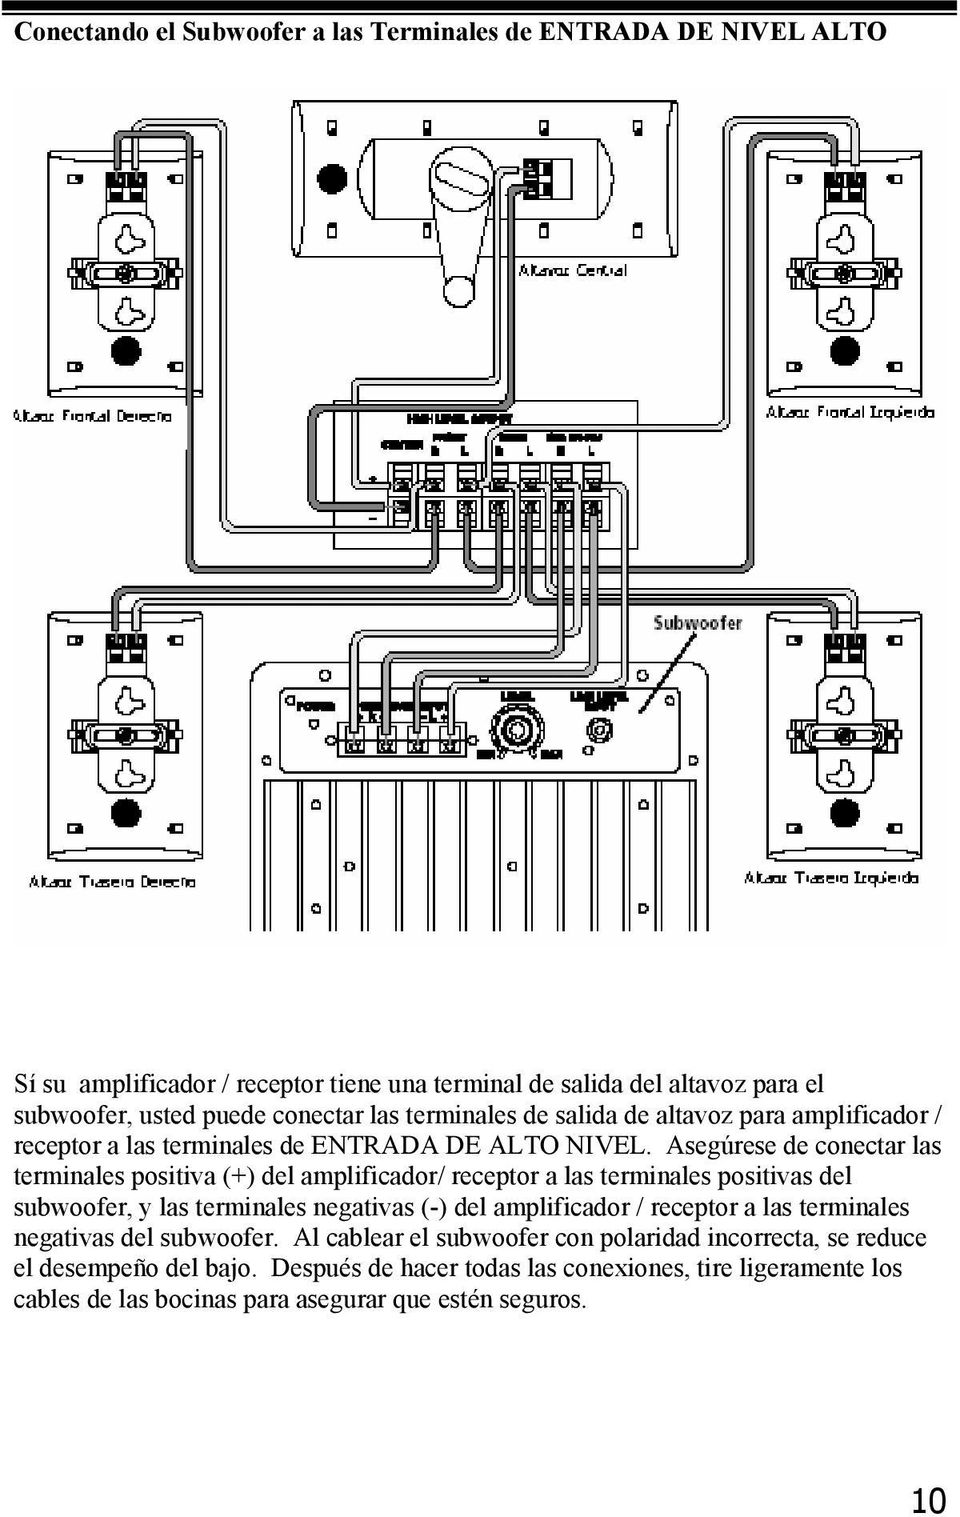 Asegúrese de conectar las terminales positiva (+) del amplificador/ receptor a las terminales positivas del subwoofer, y las terminales negativas (-) del amplificador /